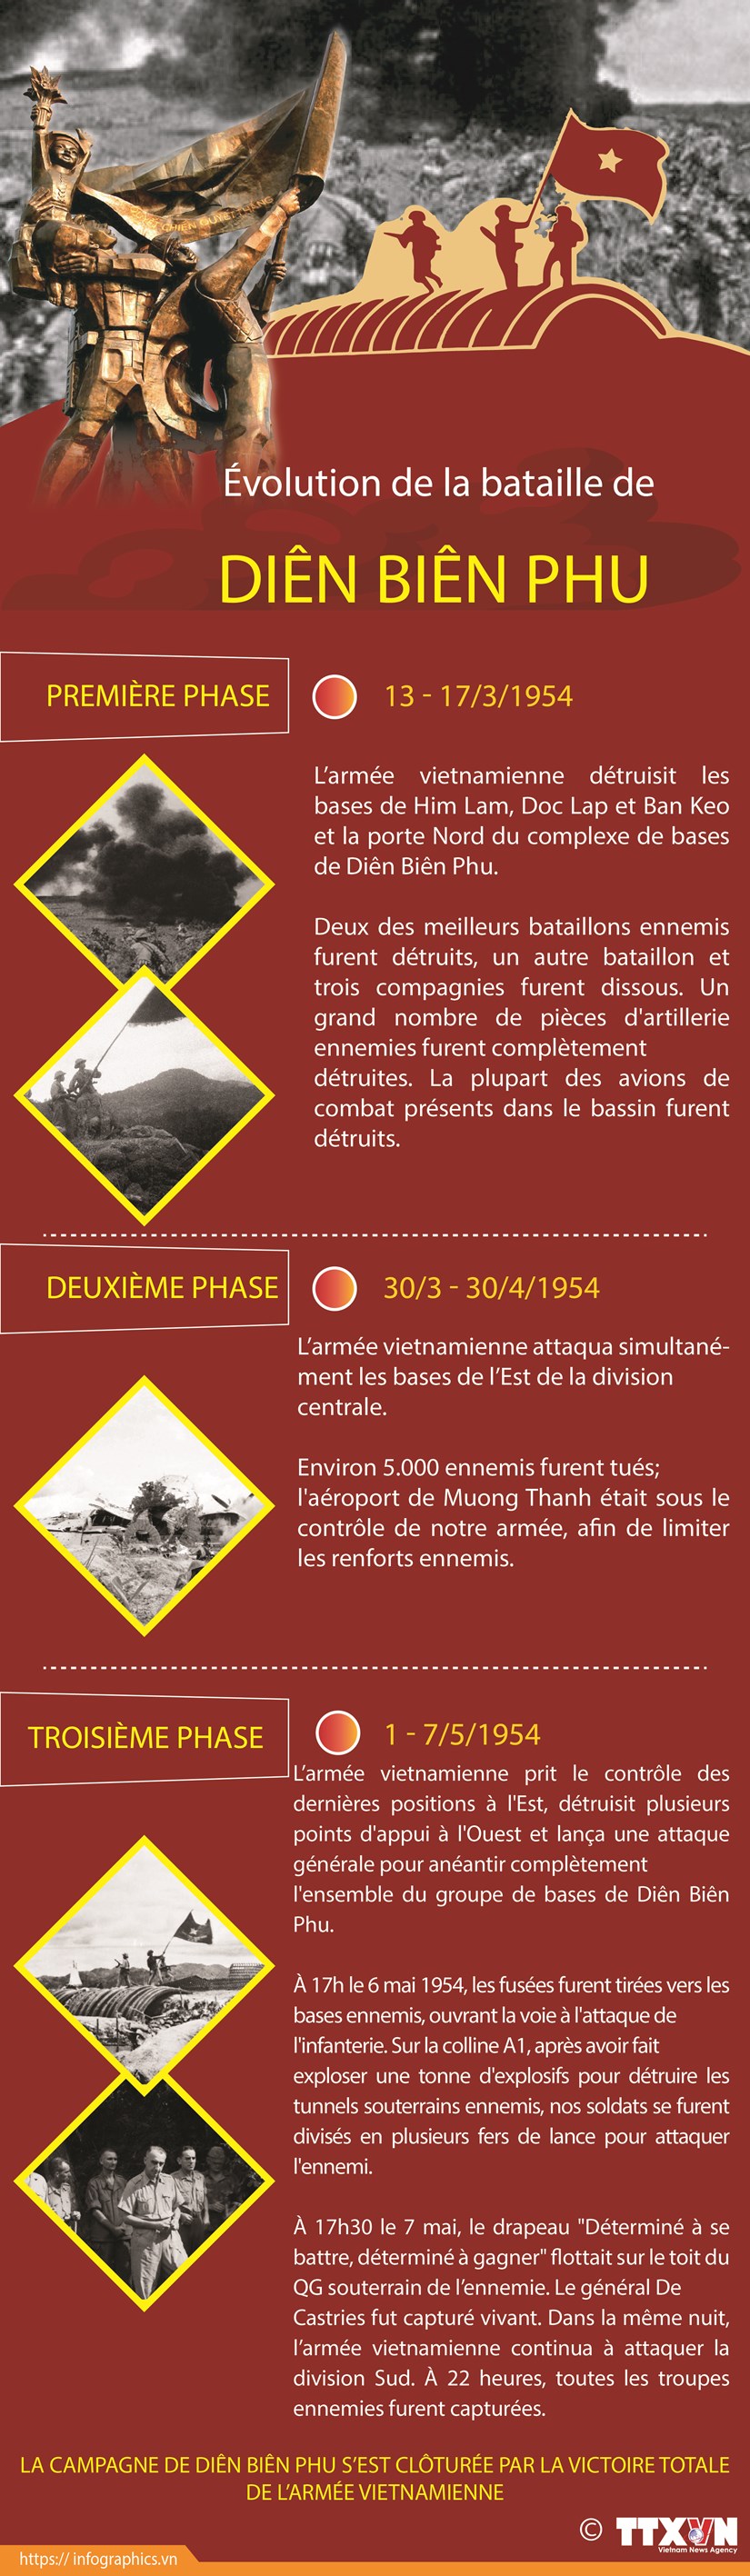 Evolution de la bataille historique de Dien Bien Phu hinh anh 1